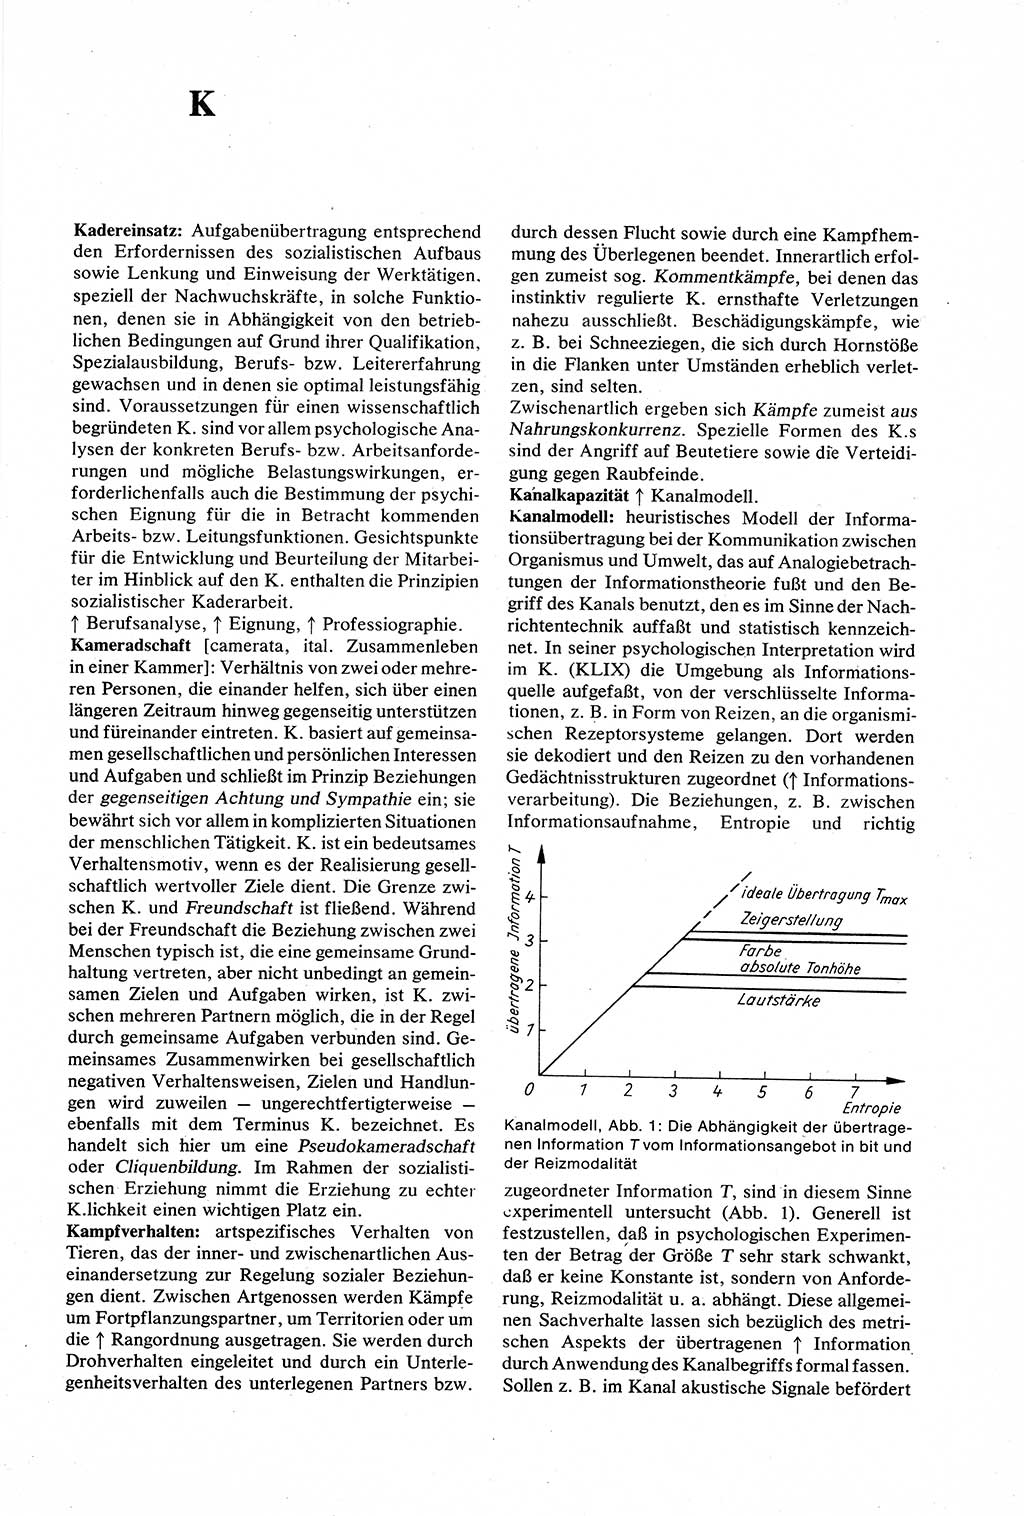 Wörterbuch der Psychologie [Deutsche Demokratische Republik (DDR)] 1976, Seite 267 (Wb. Psych. DDR 1976, S. 267)